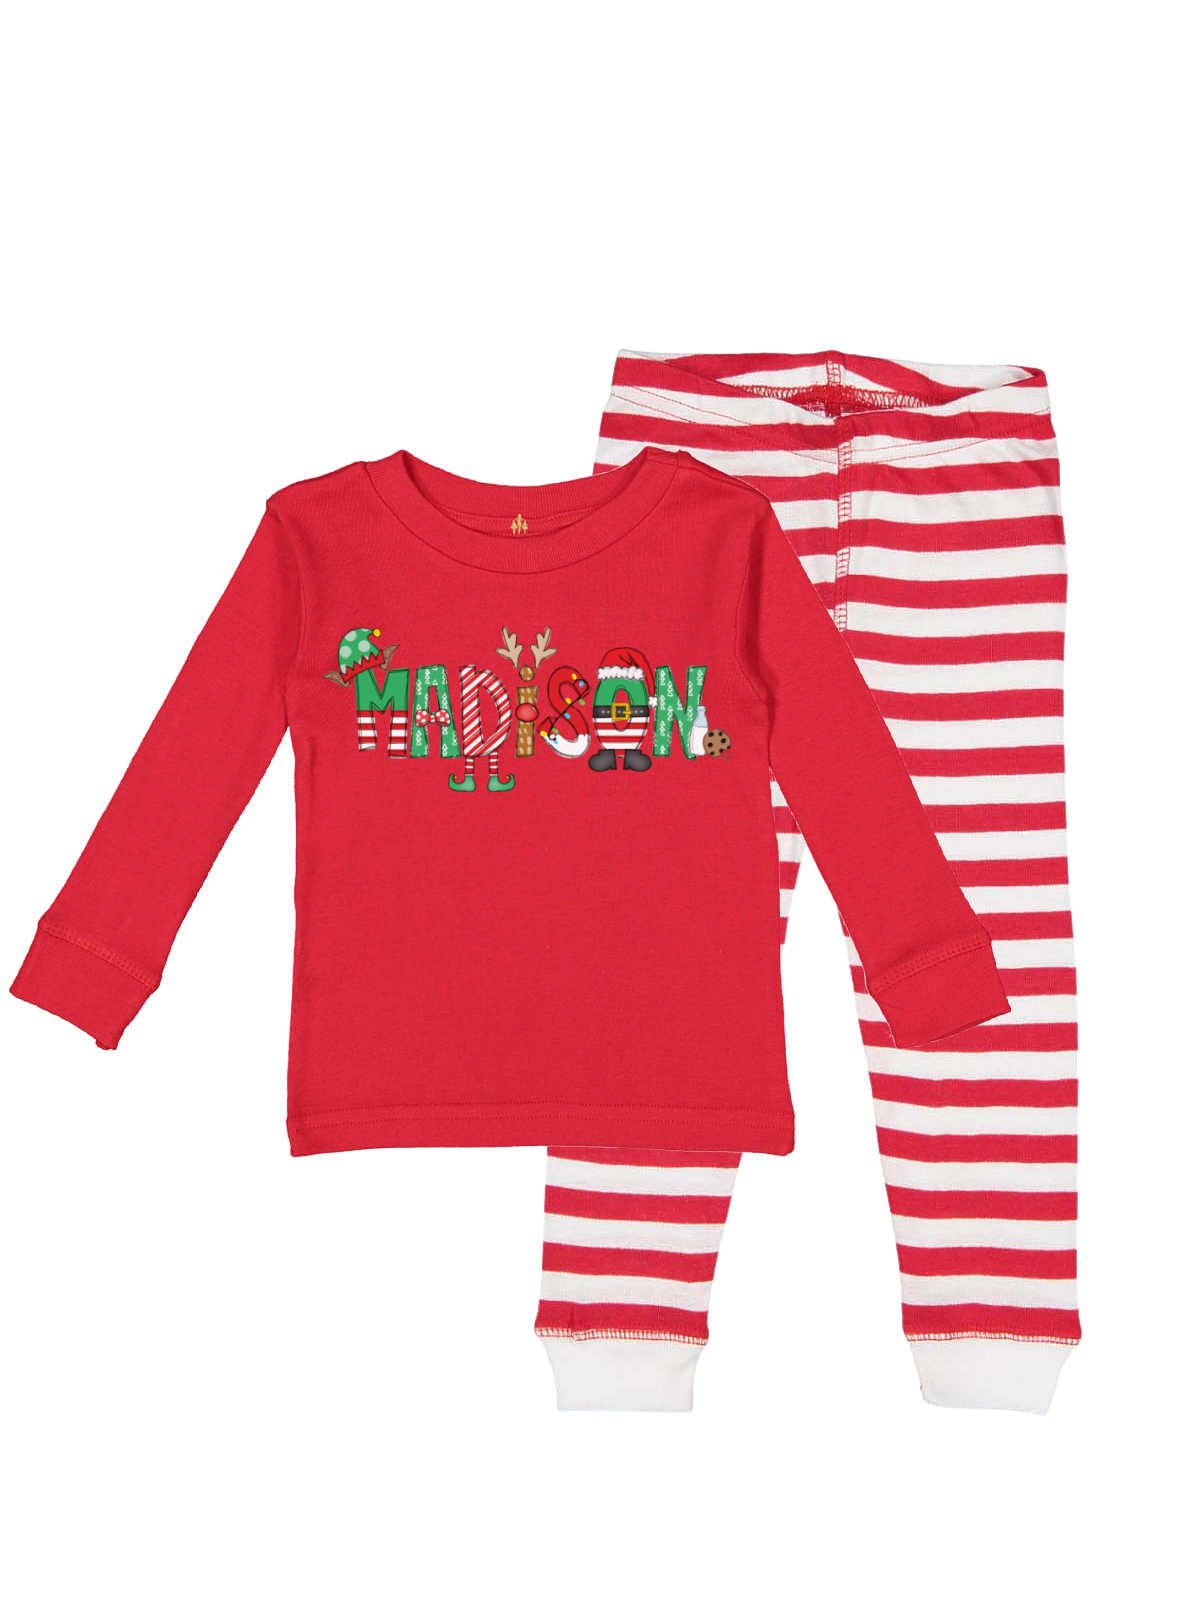 Kids Custom Christmas Pajamas Red and Stripes